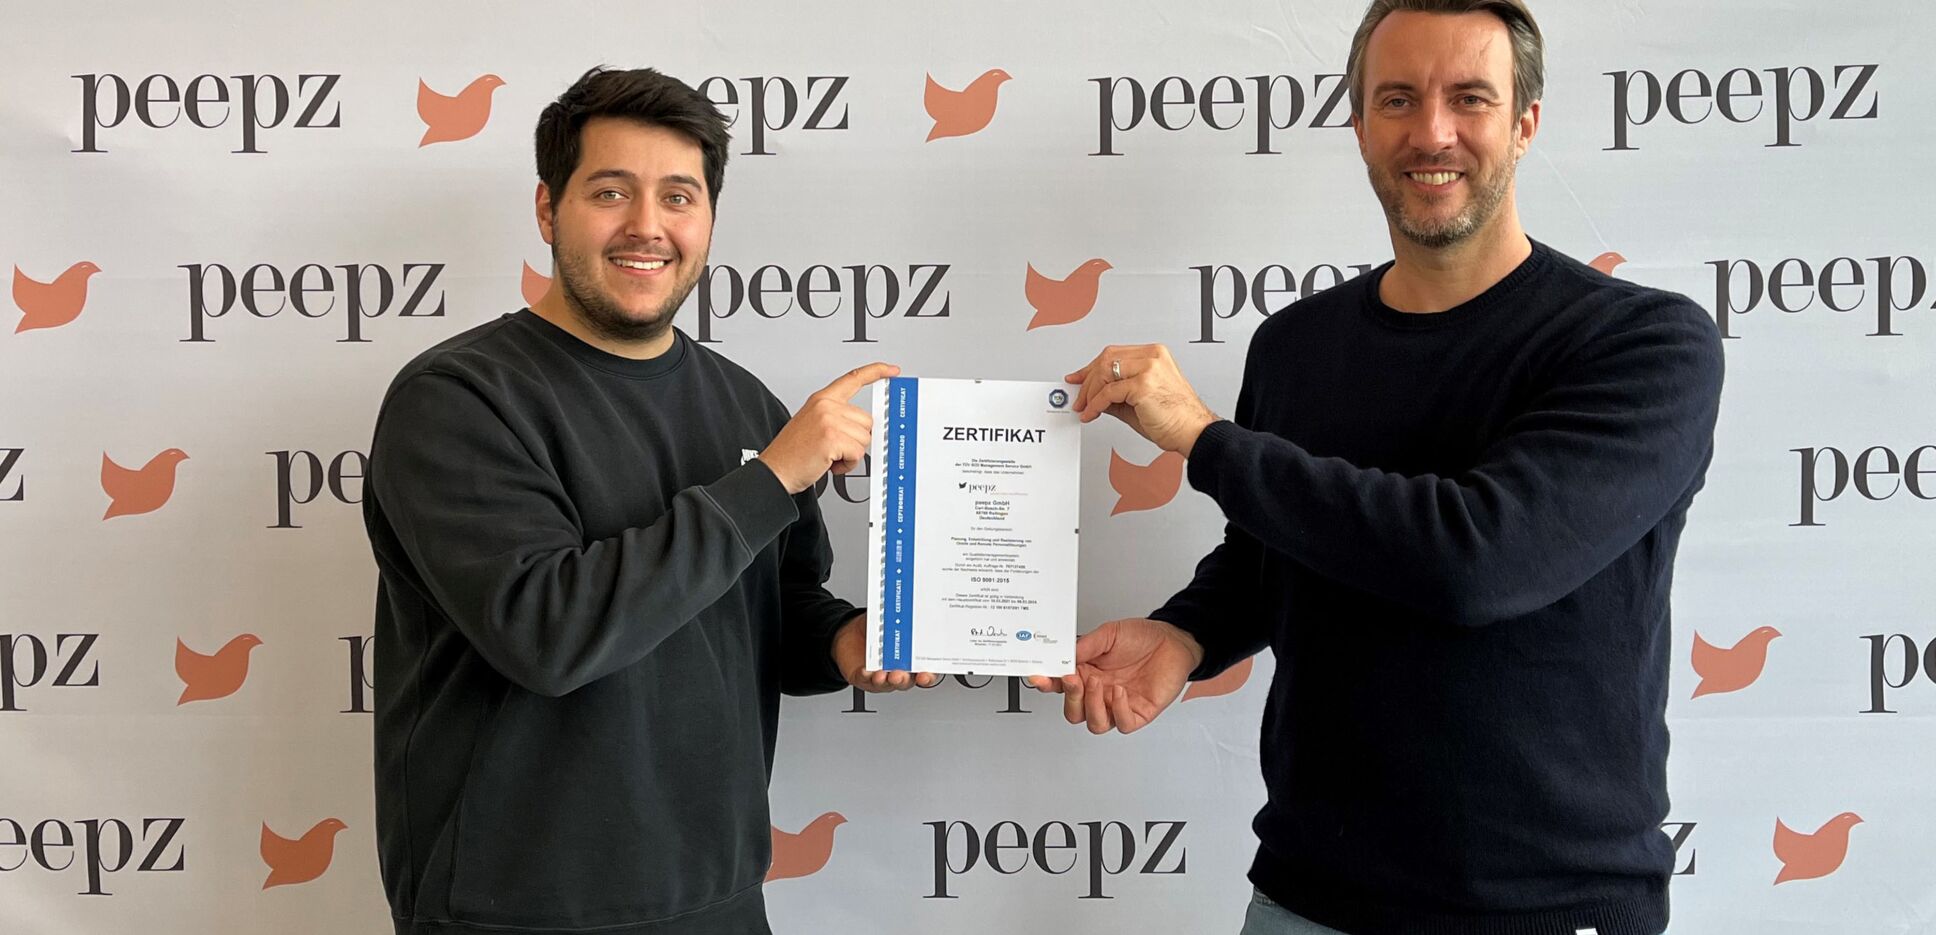 Das ISO 9001 Zertifikat der peepz GmbH